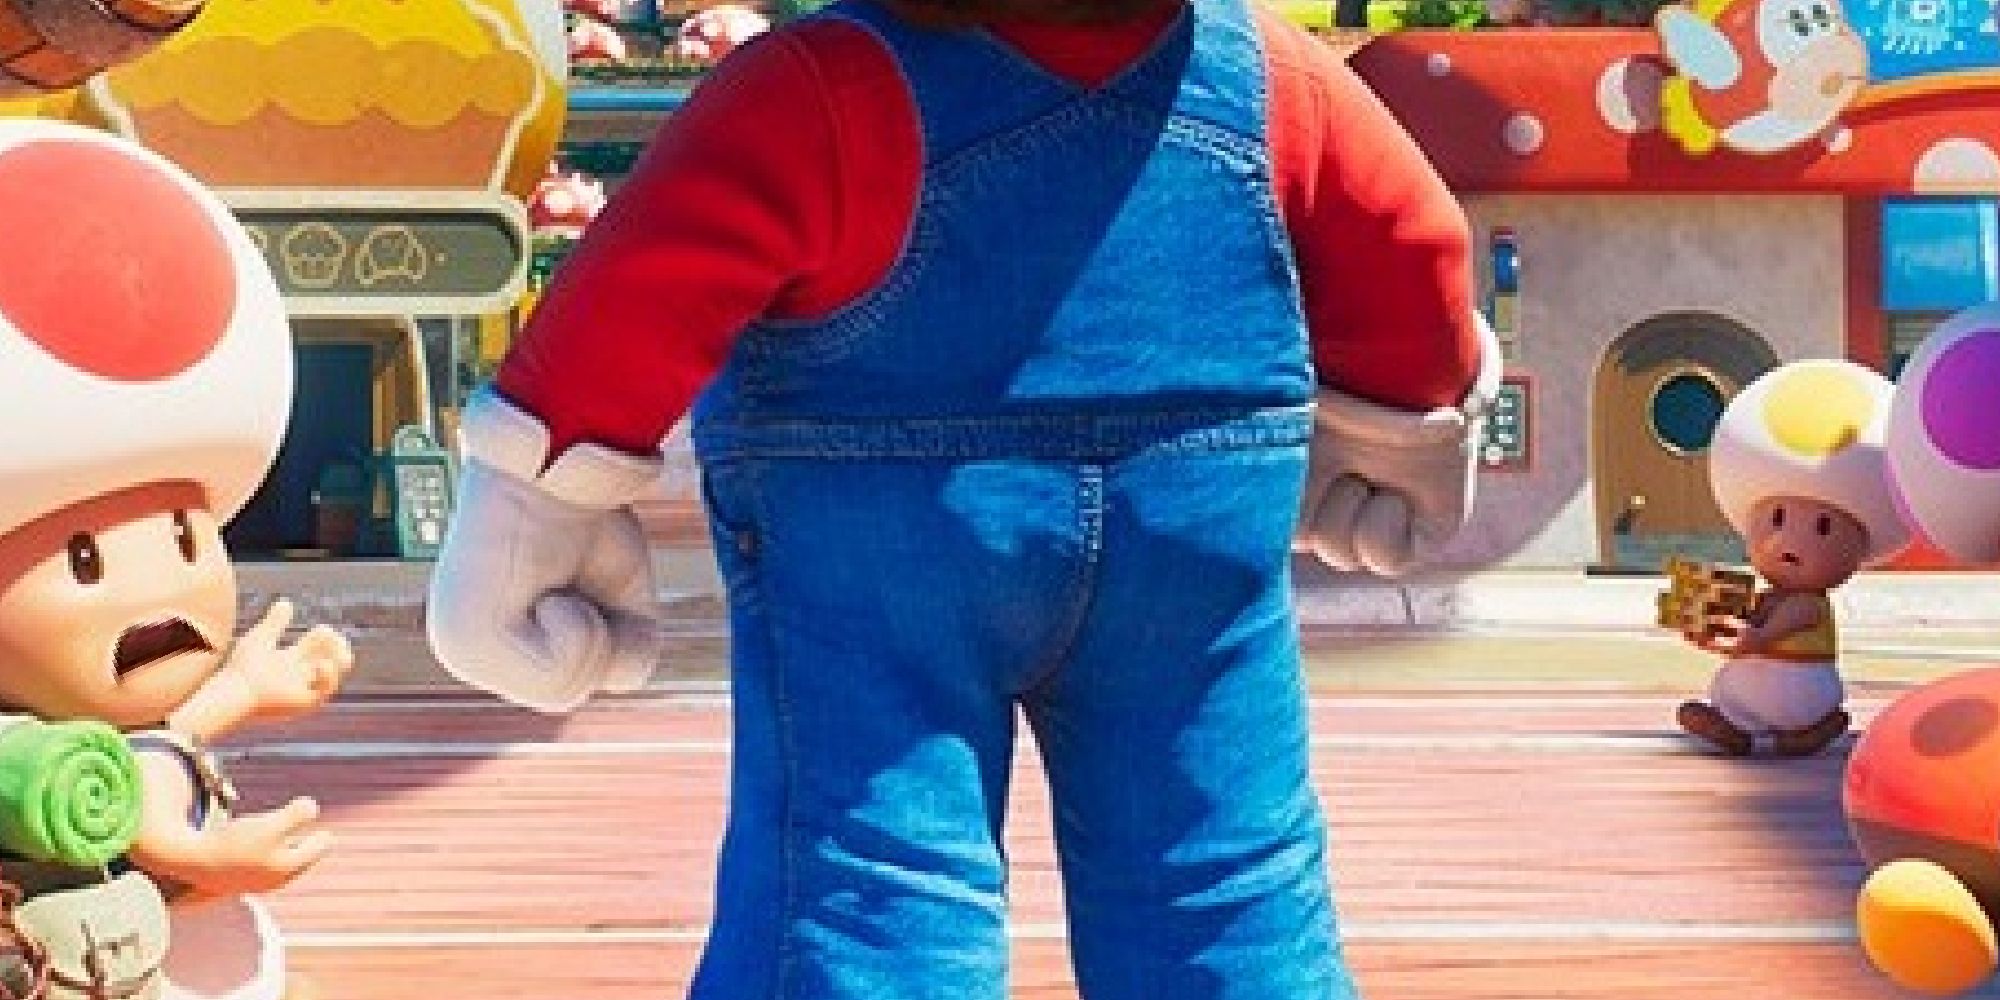 Marios ass